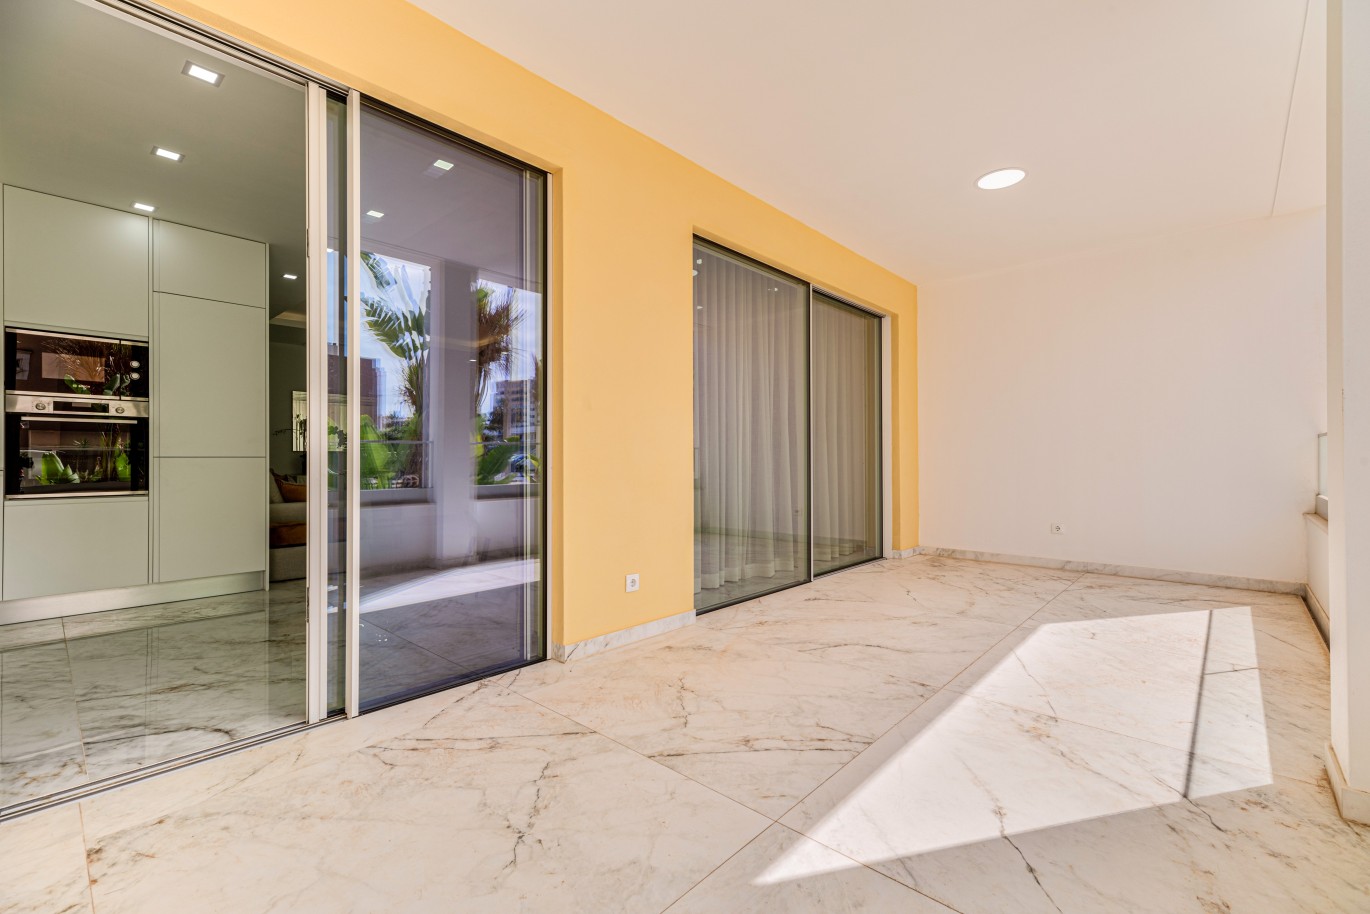 Apartamento em construção, com terraço, para venda, em Lagos, Algarve_238539